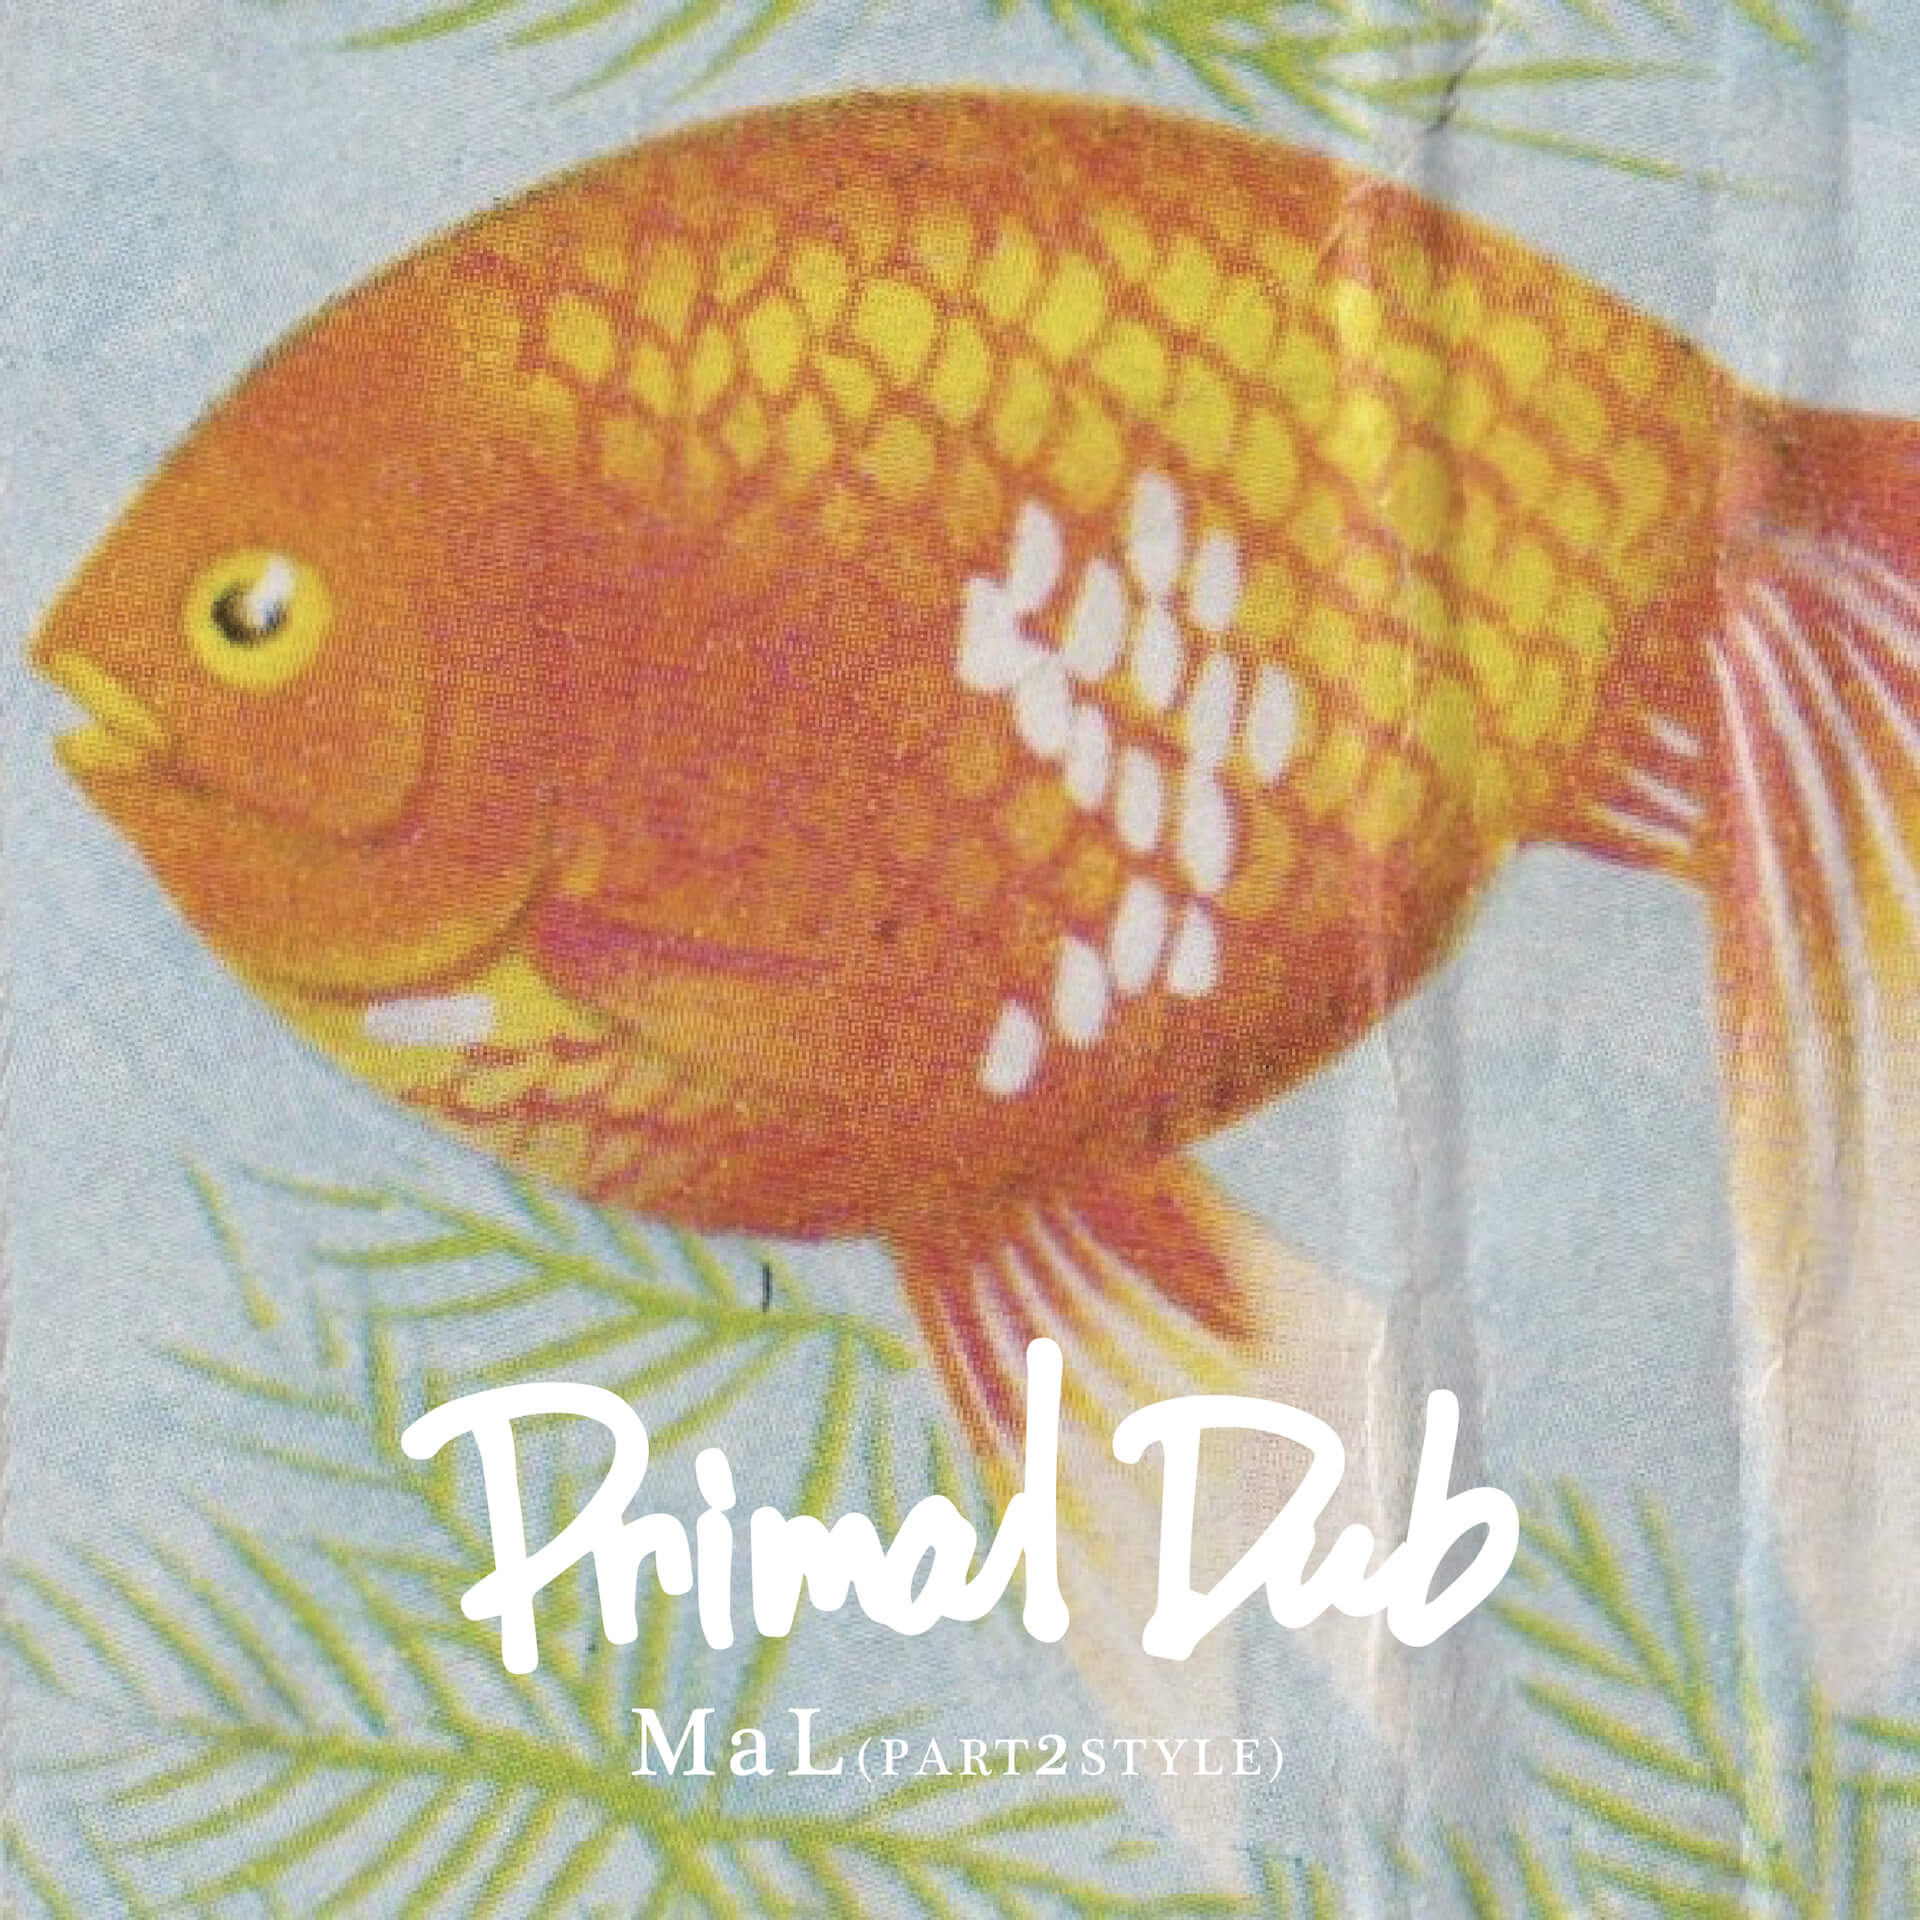 PART2STYLEのMaL、1stソロアルバム『Primal Dub』を高田馬場KUSUDAMAの新レーベルからリリース music220114-mal-primal-dub-2